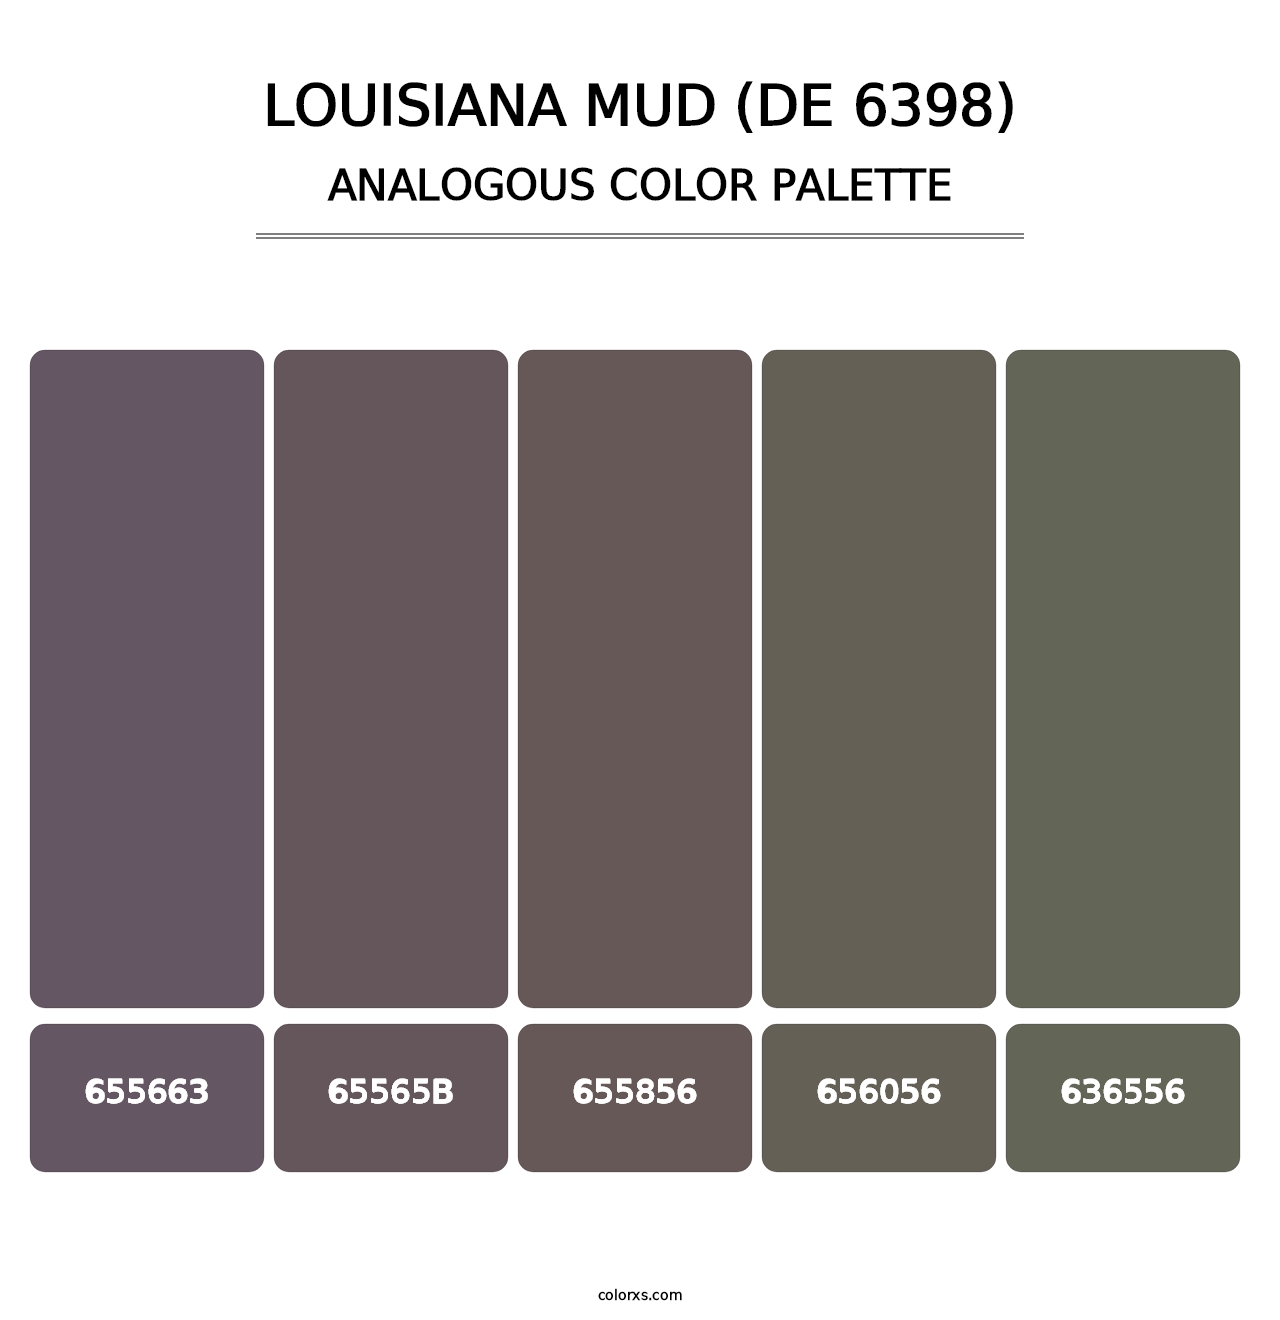 Louisiana Mud (DE 6398) - Analogous Color Palette